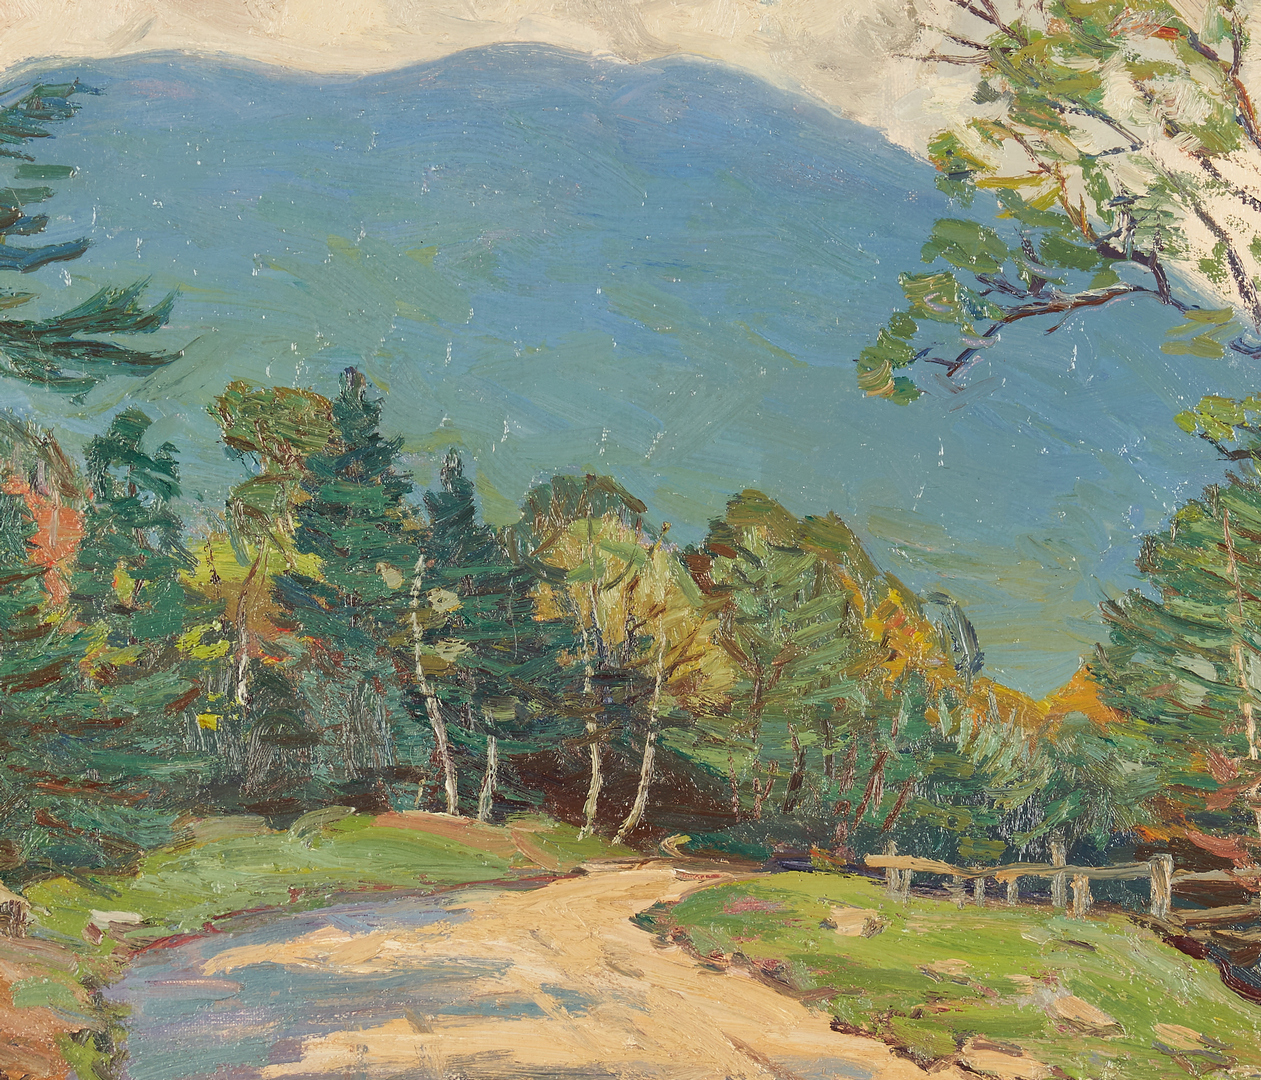 Lot 354: Robert Emmett Owen, New England Landscape O/C